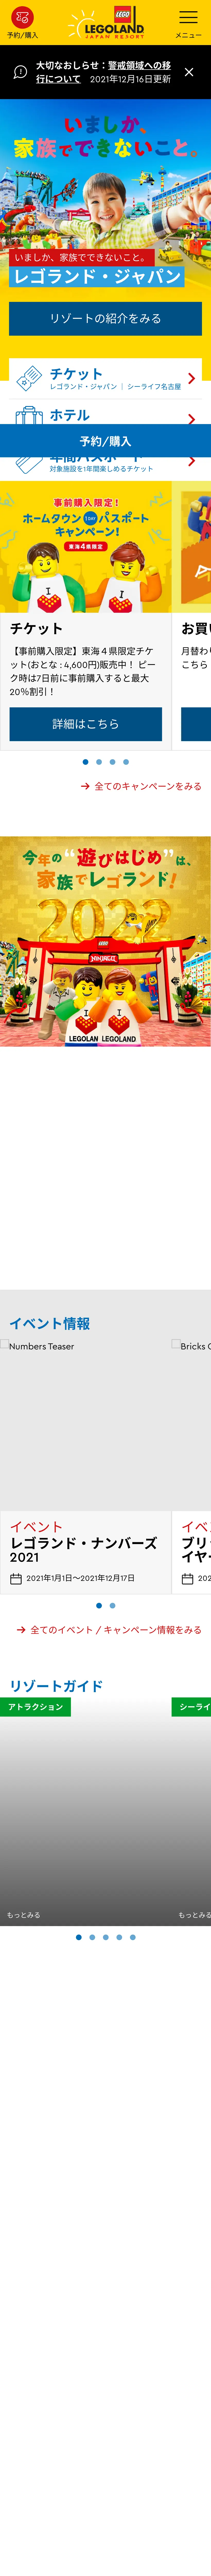 キャプチャ画面 会社名:LEGOLAND Japan合同会社プロジェクト名:LEGOLAND® 画面名:A デバイス名:SPカテゴリ:アミューズメントタグ:SP,A